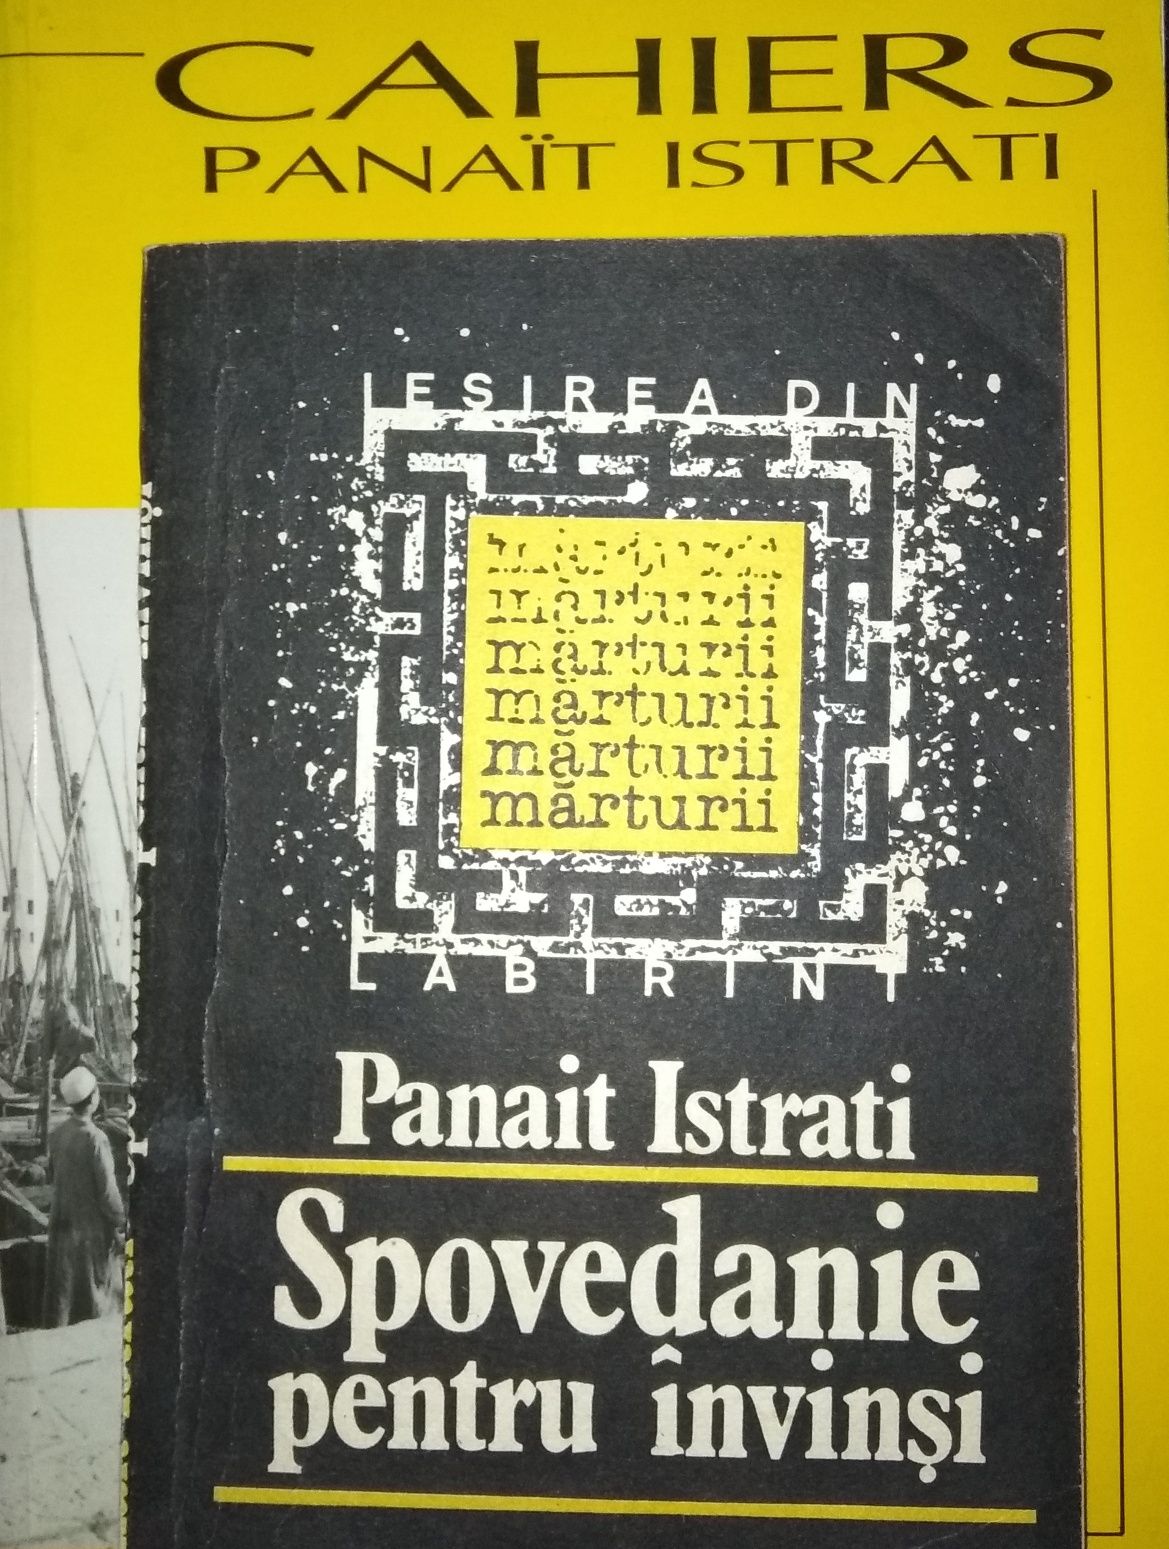 DE COLECȚIE: Caietul din 1993 Panait Istrati și alte volume